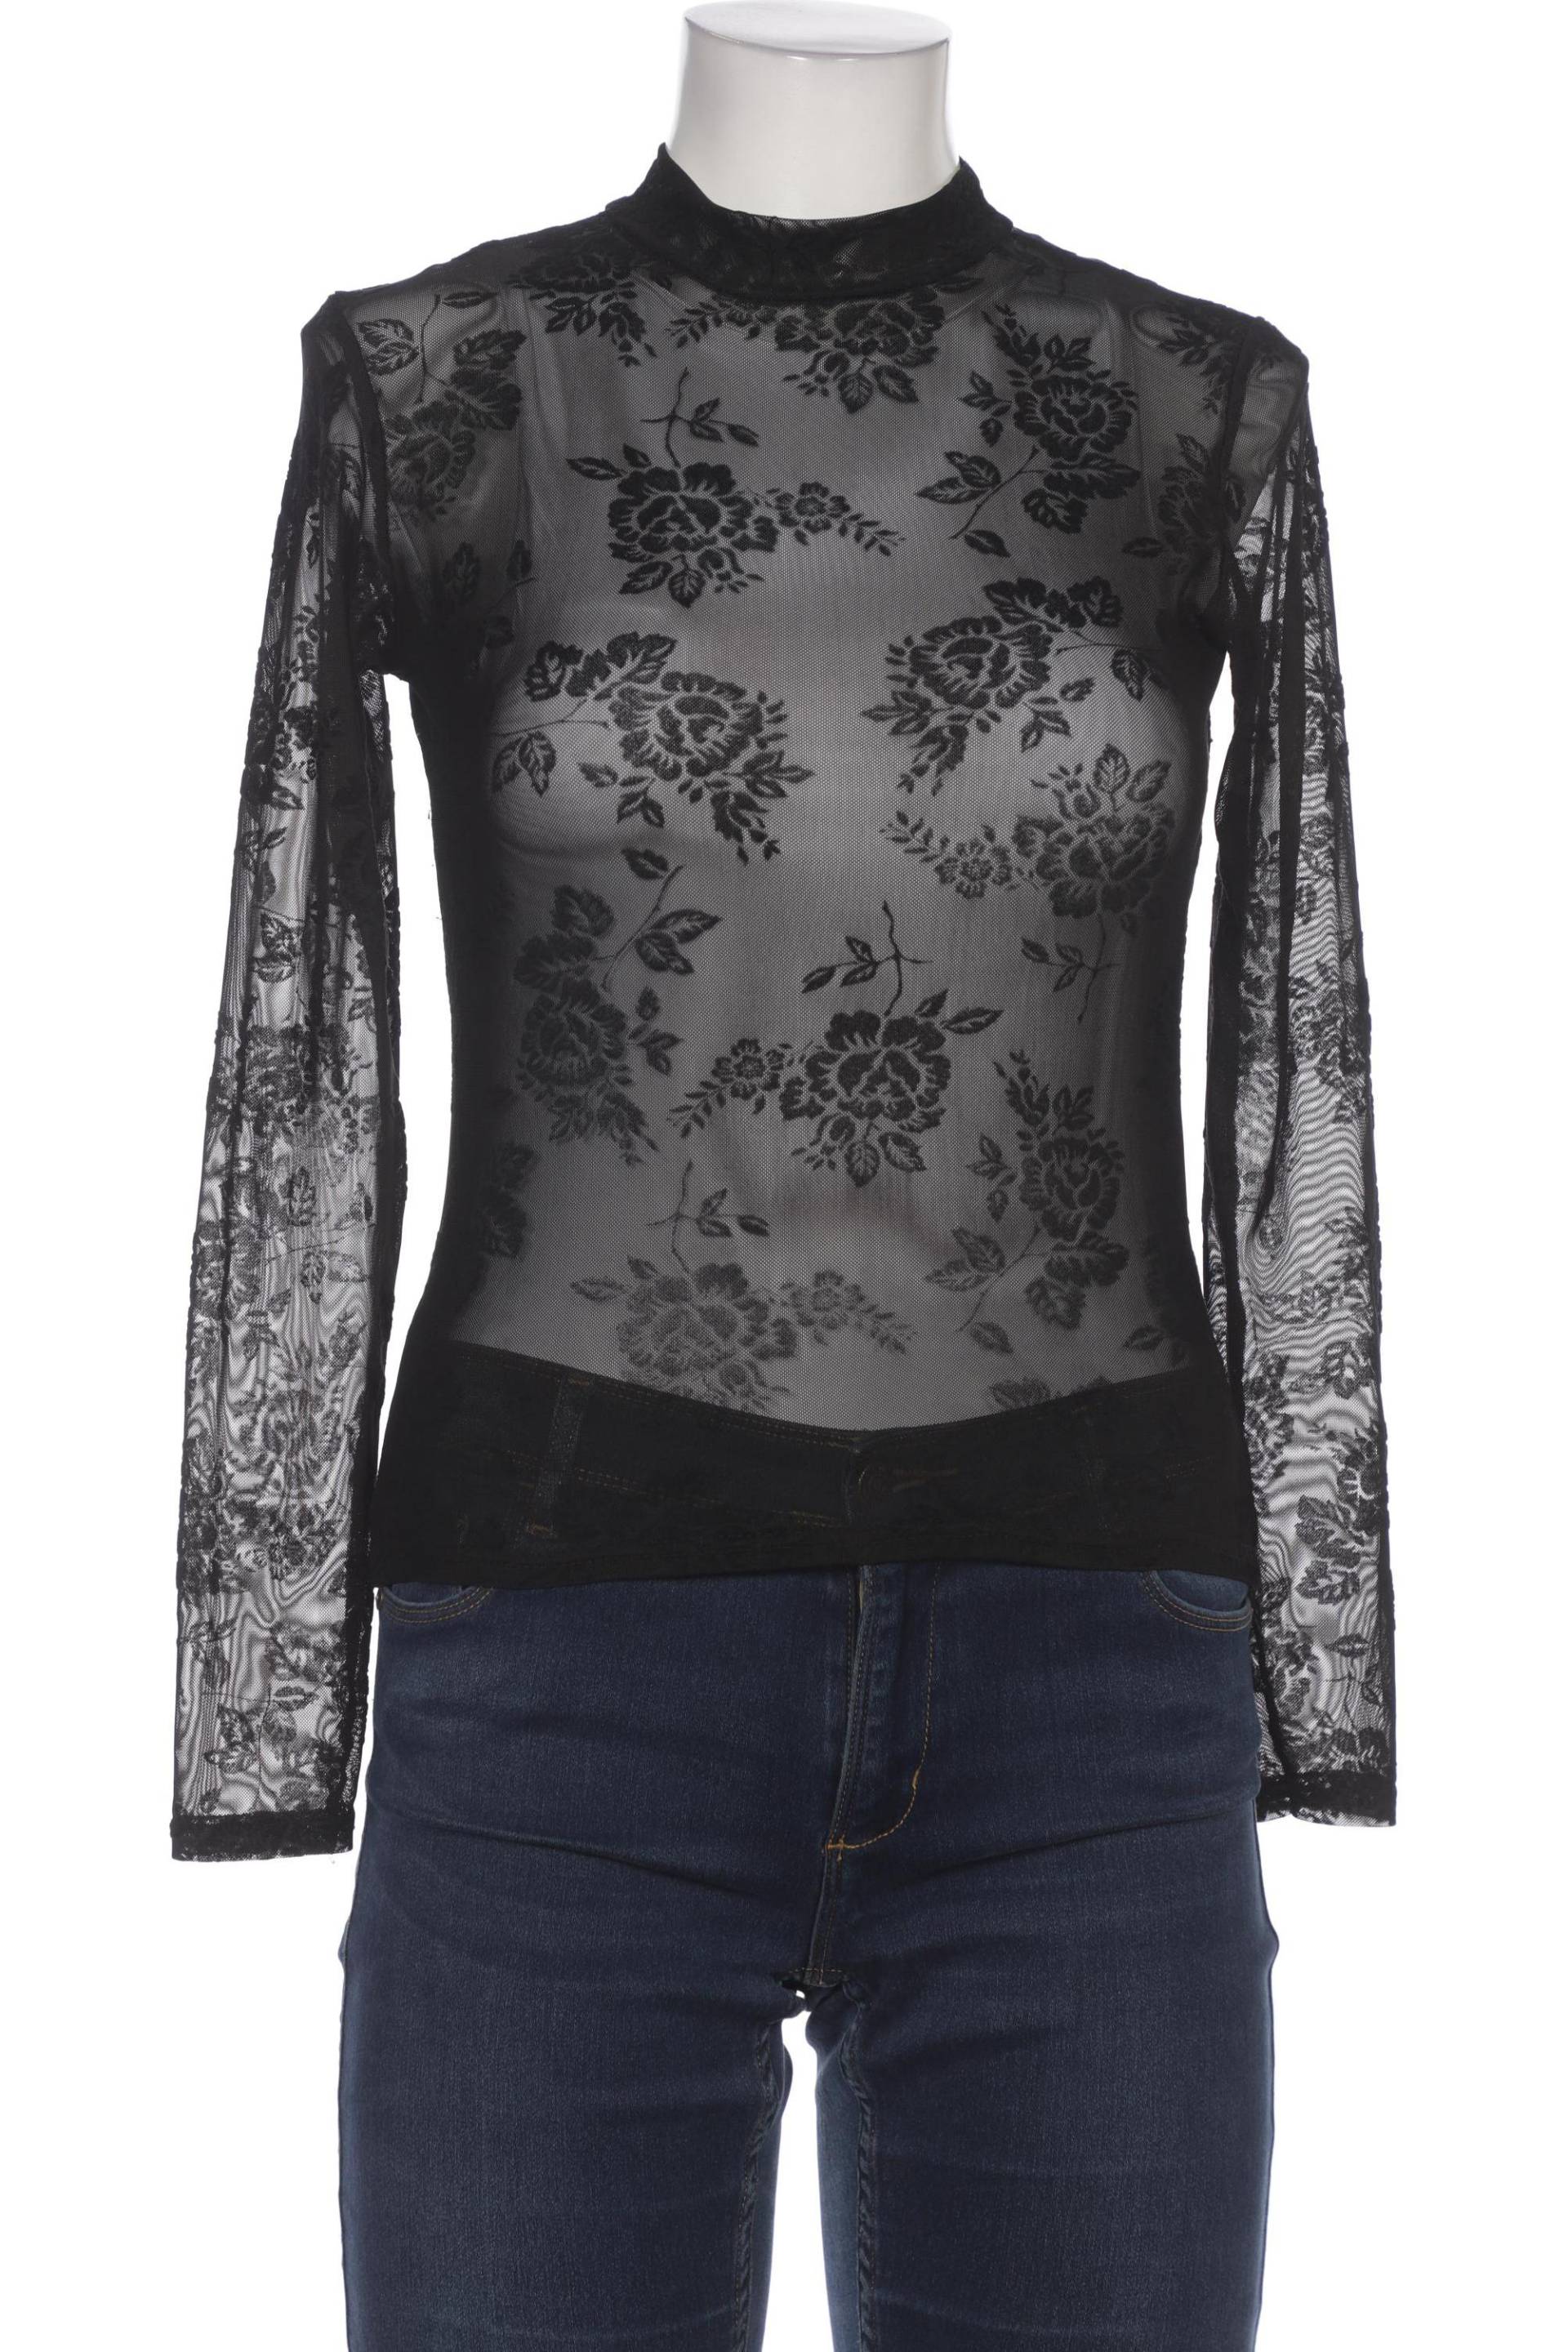 New Look Damen Langarmshirt, schwarz, Gr. 40 von New Look